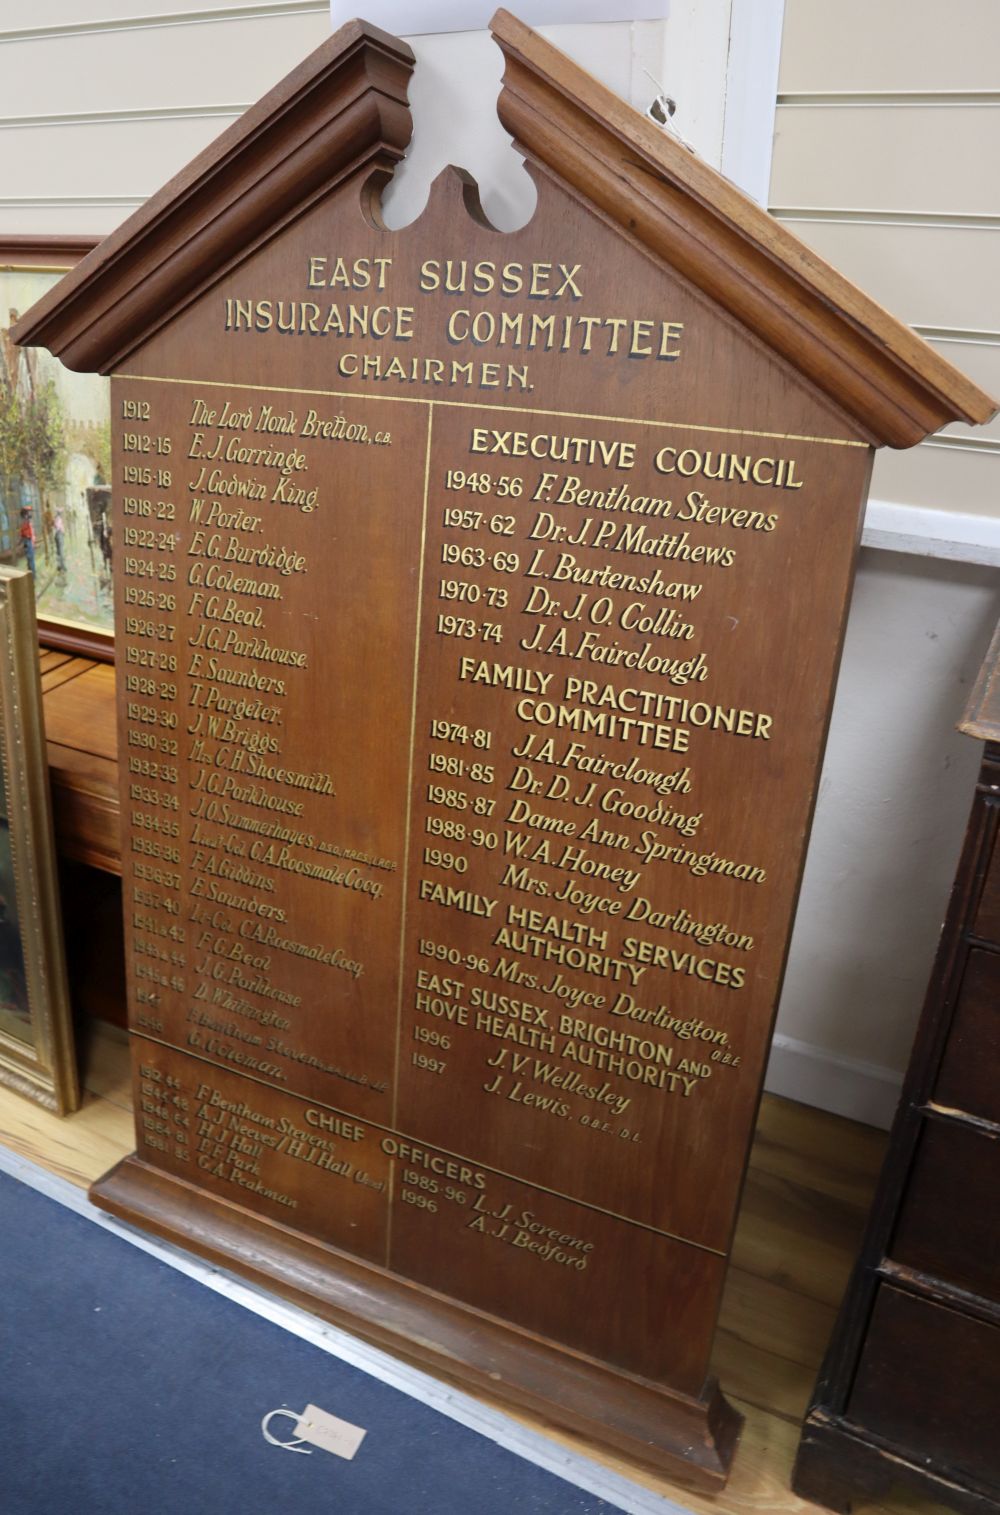 An early 20th century oak Honours board, width 90cm, height 130cm